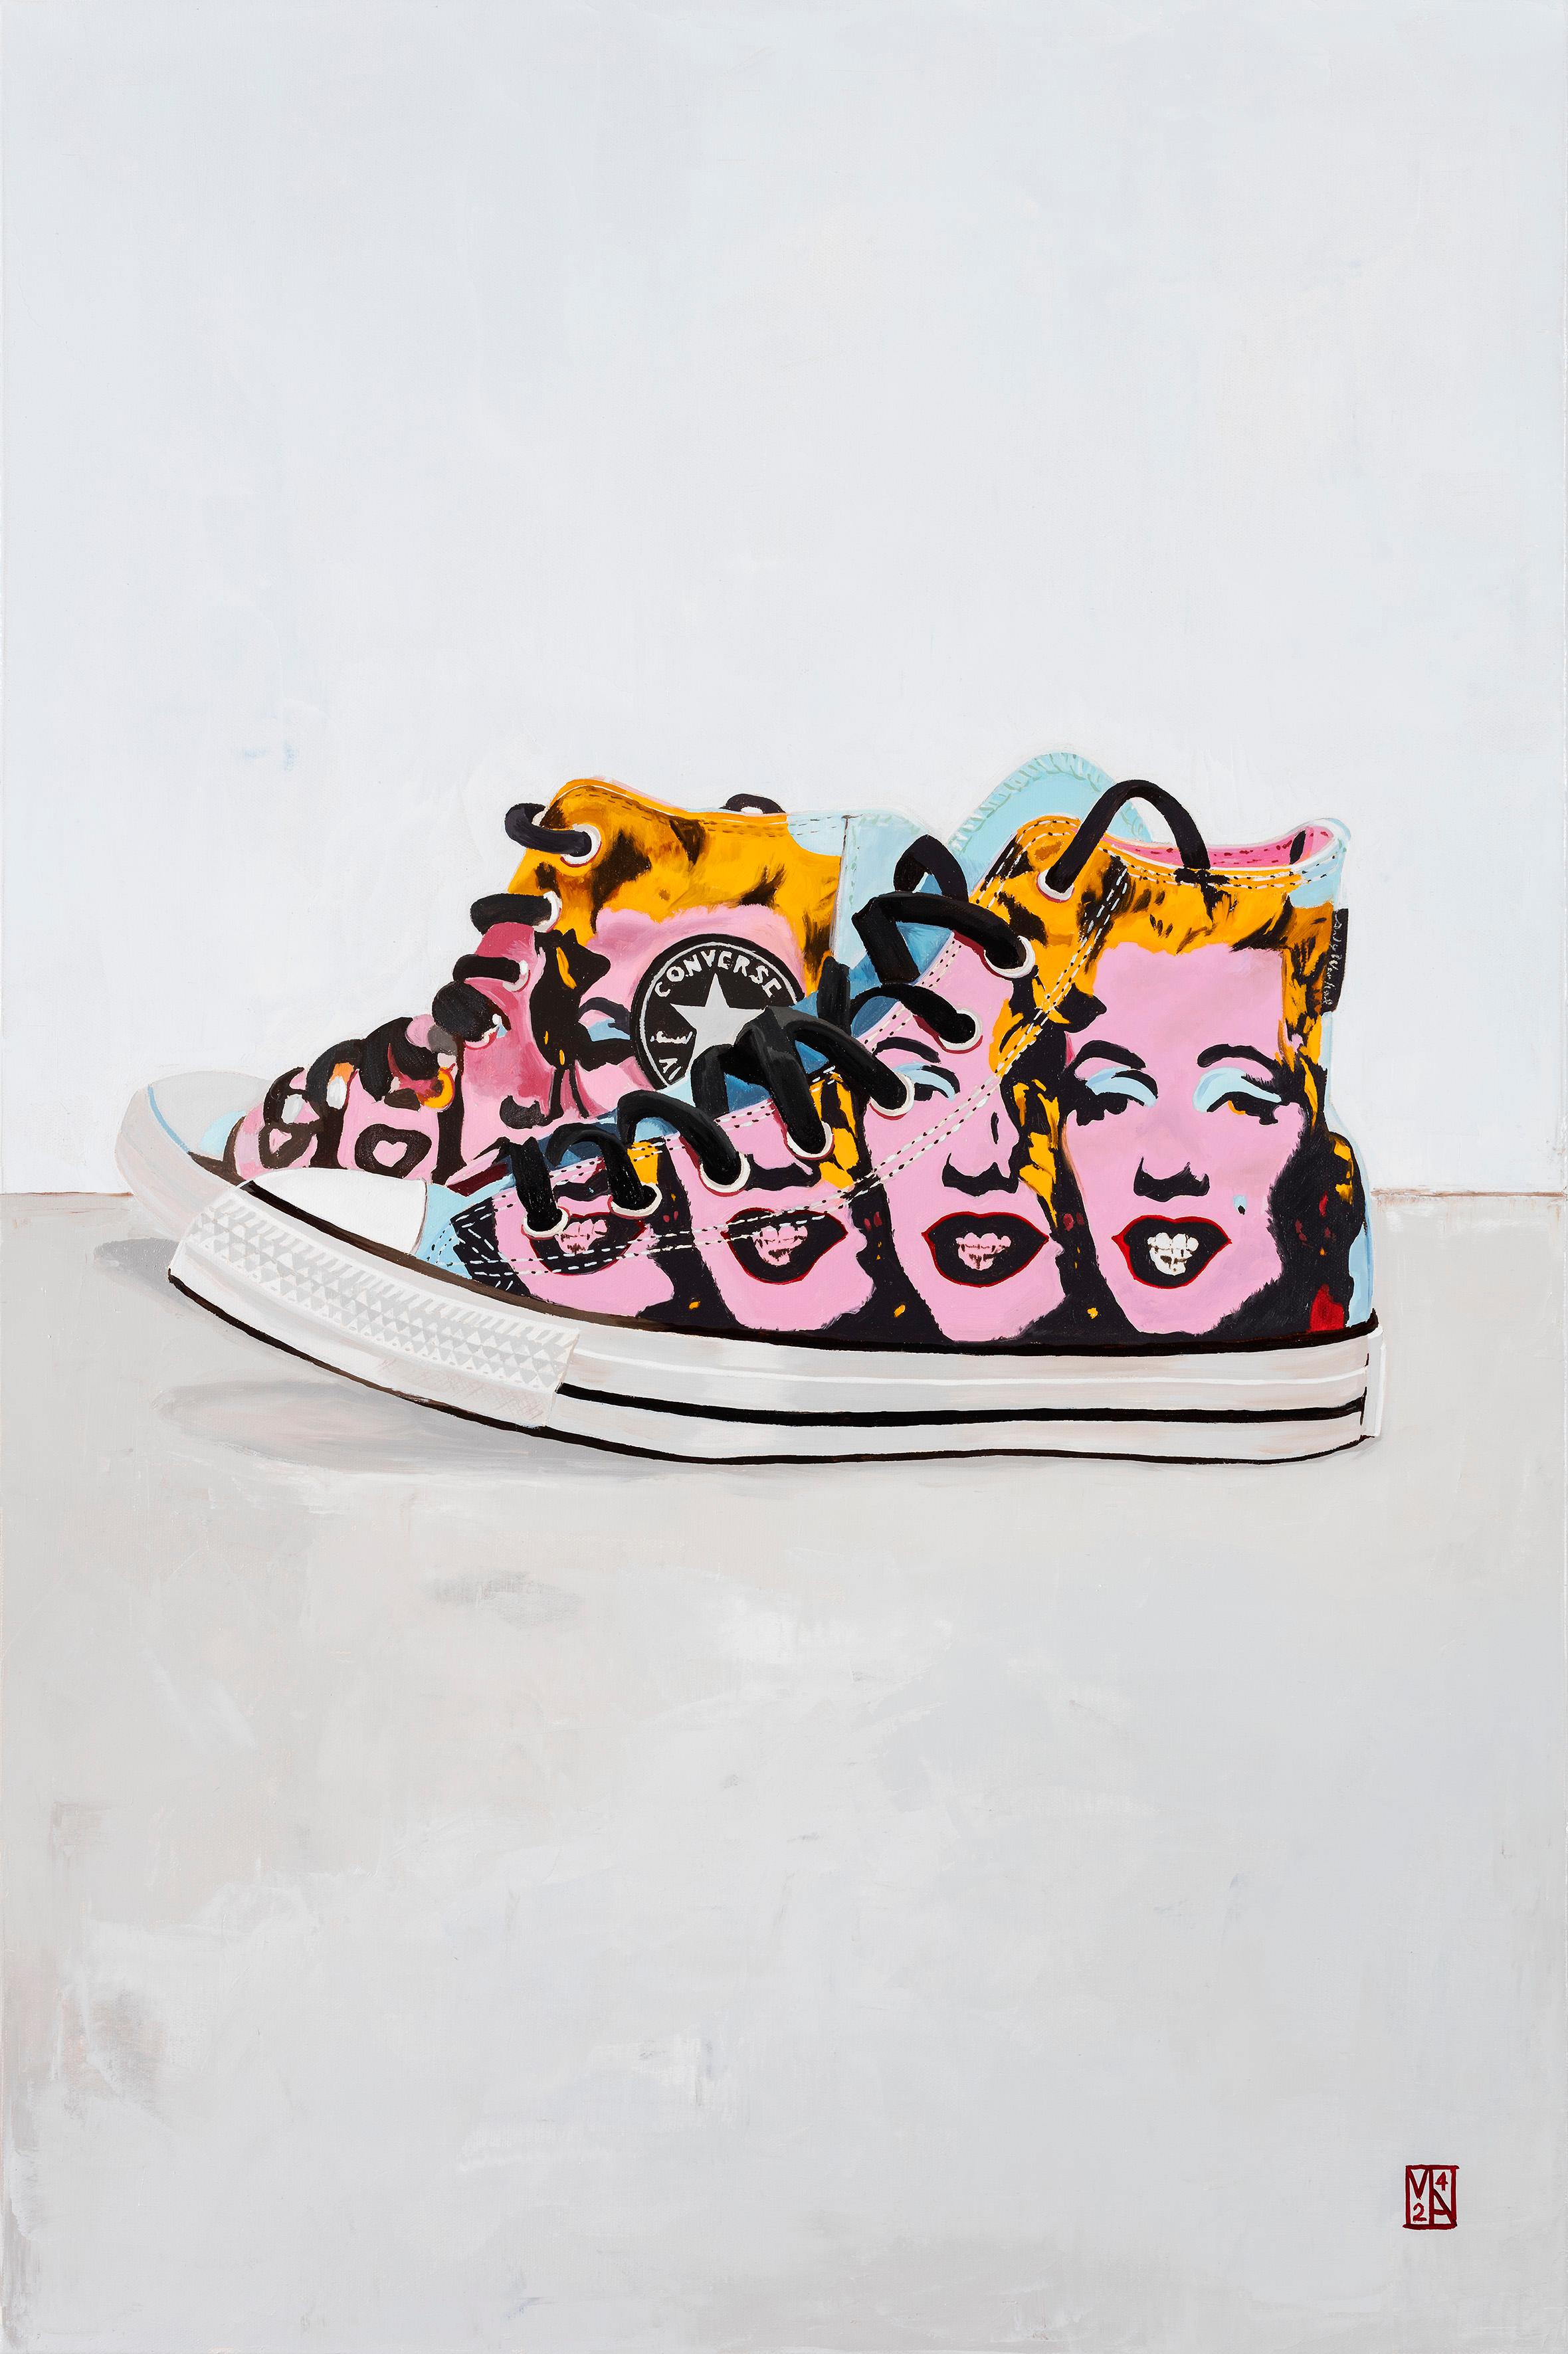 Treten Sie ein in eine Welt, in der ikonische Popkultur und zeitlose Kunstfertigkeit miteinander verschmelzen - mit den "Converse Marilyn Sneakers Art", einem fesselnden Meisterwerk des renommierten Künstlers Martin Allen. Dieses einzigartige